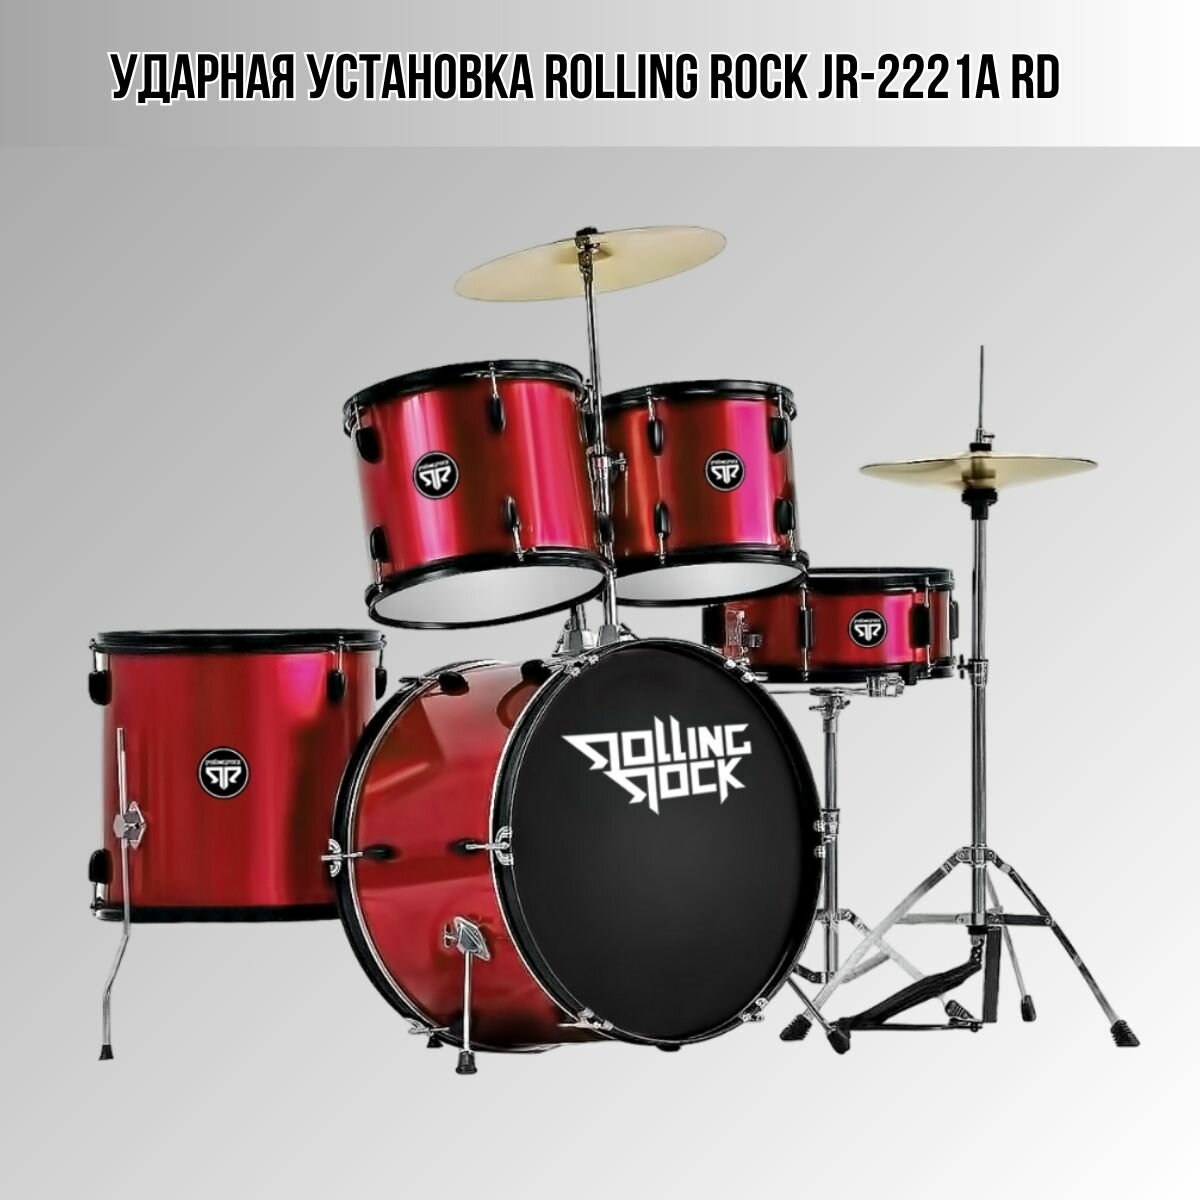 Ударная барабанная акустическая установка Rolling Rock JR-2221A RD из 5-ти барабанов, цвет красный металлик, без стула